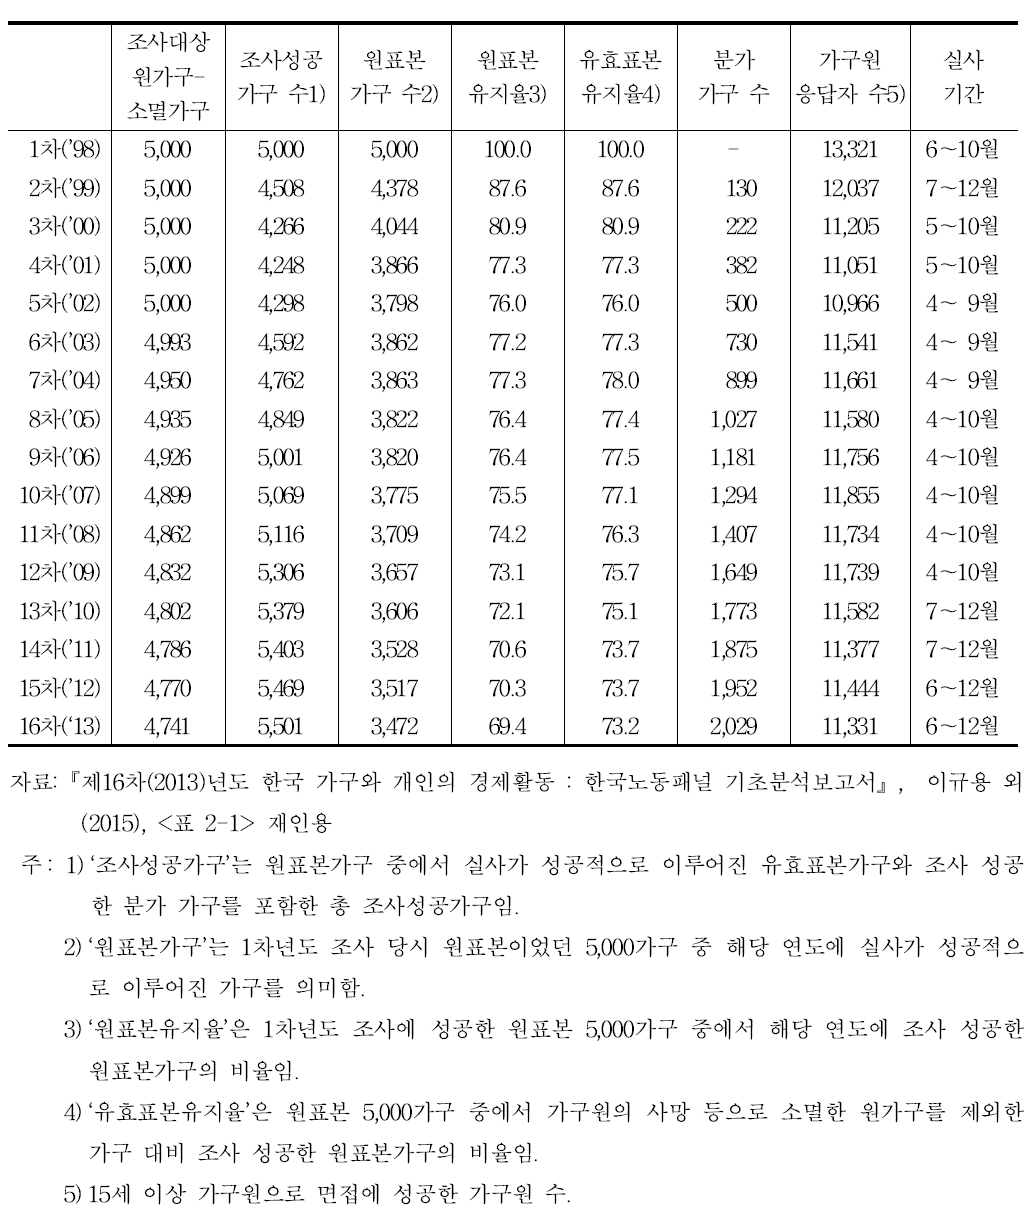 1～16차년도 한국노동패널조사 결과 및 표본 유지율